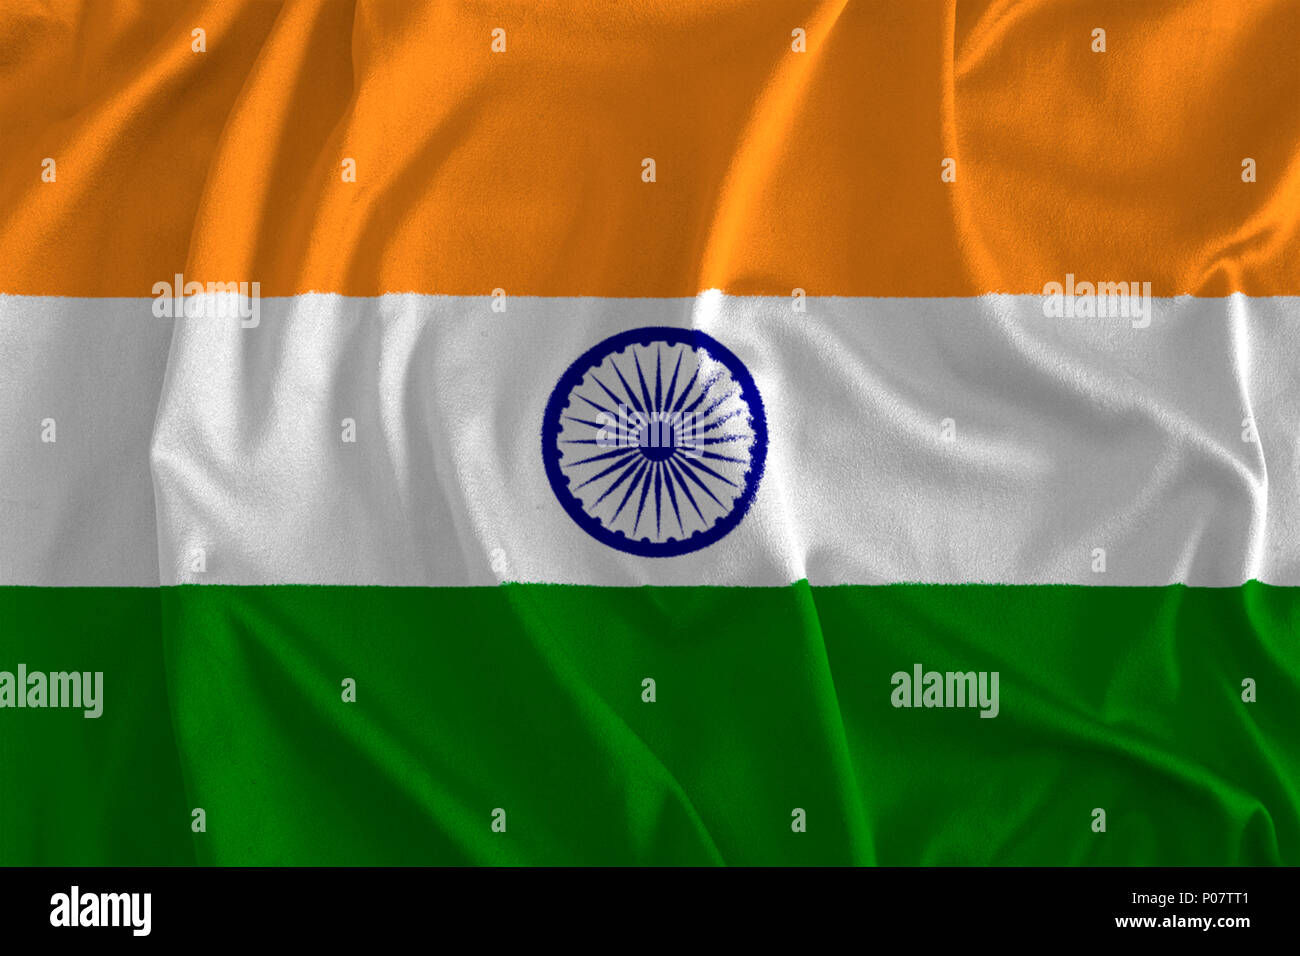 Với màu sắc tươi sáng và đầy sức sống, cờ của Ấn Độ mang đến sự phong phú và đa dạng của một quốc gia đa văn hóa và đa dân tộc. Hãy xem hình ảnh liên quan đến cờ Ấn Độ để trải nghiệm sự độc đáo và sức mạnh từ một trong những quốc gia lớn nhất thế giới!